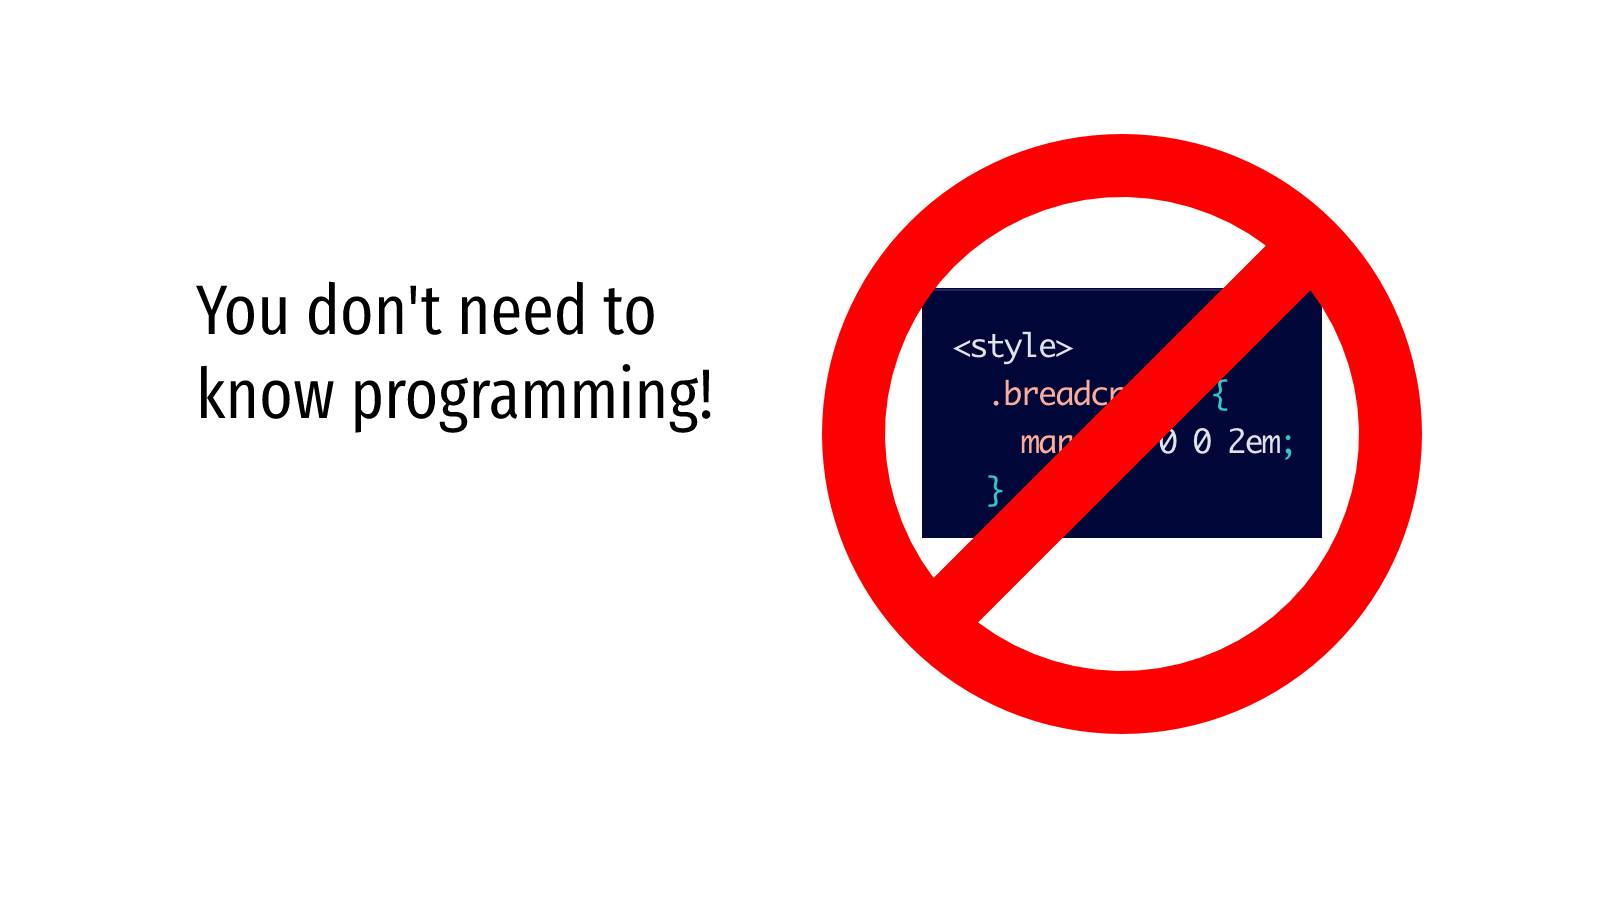 Du behöver inte kunna programmering!